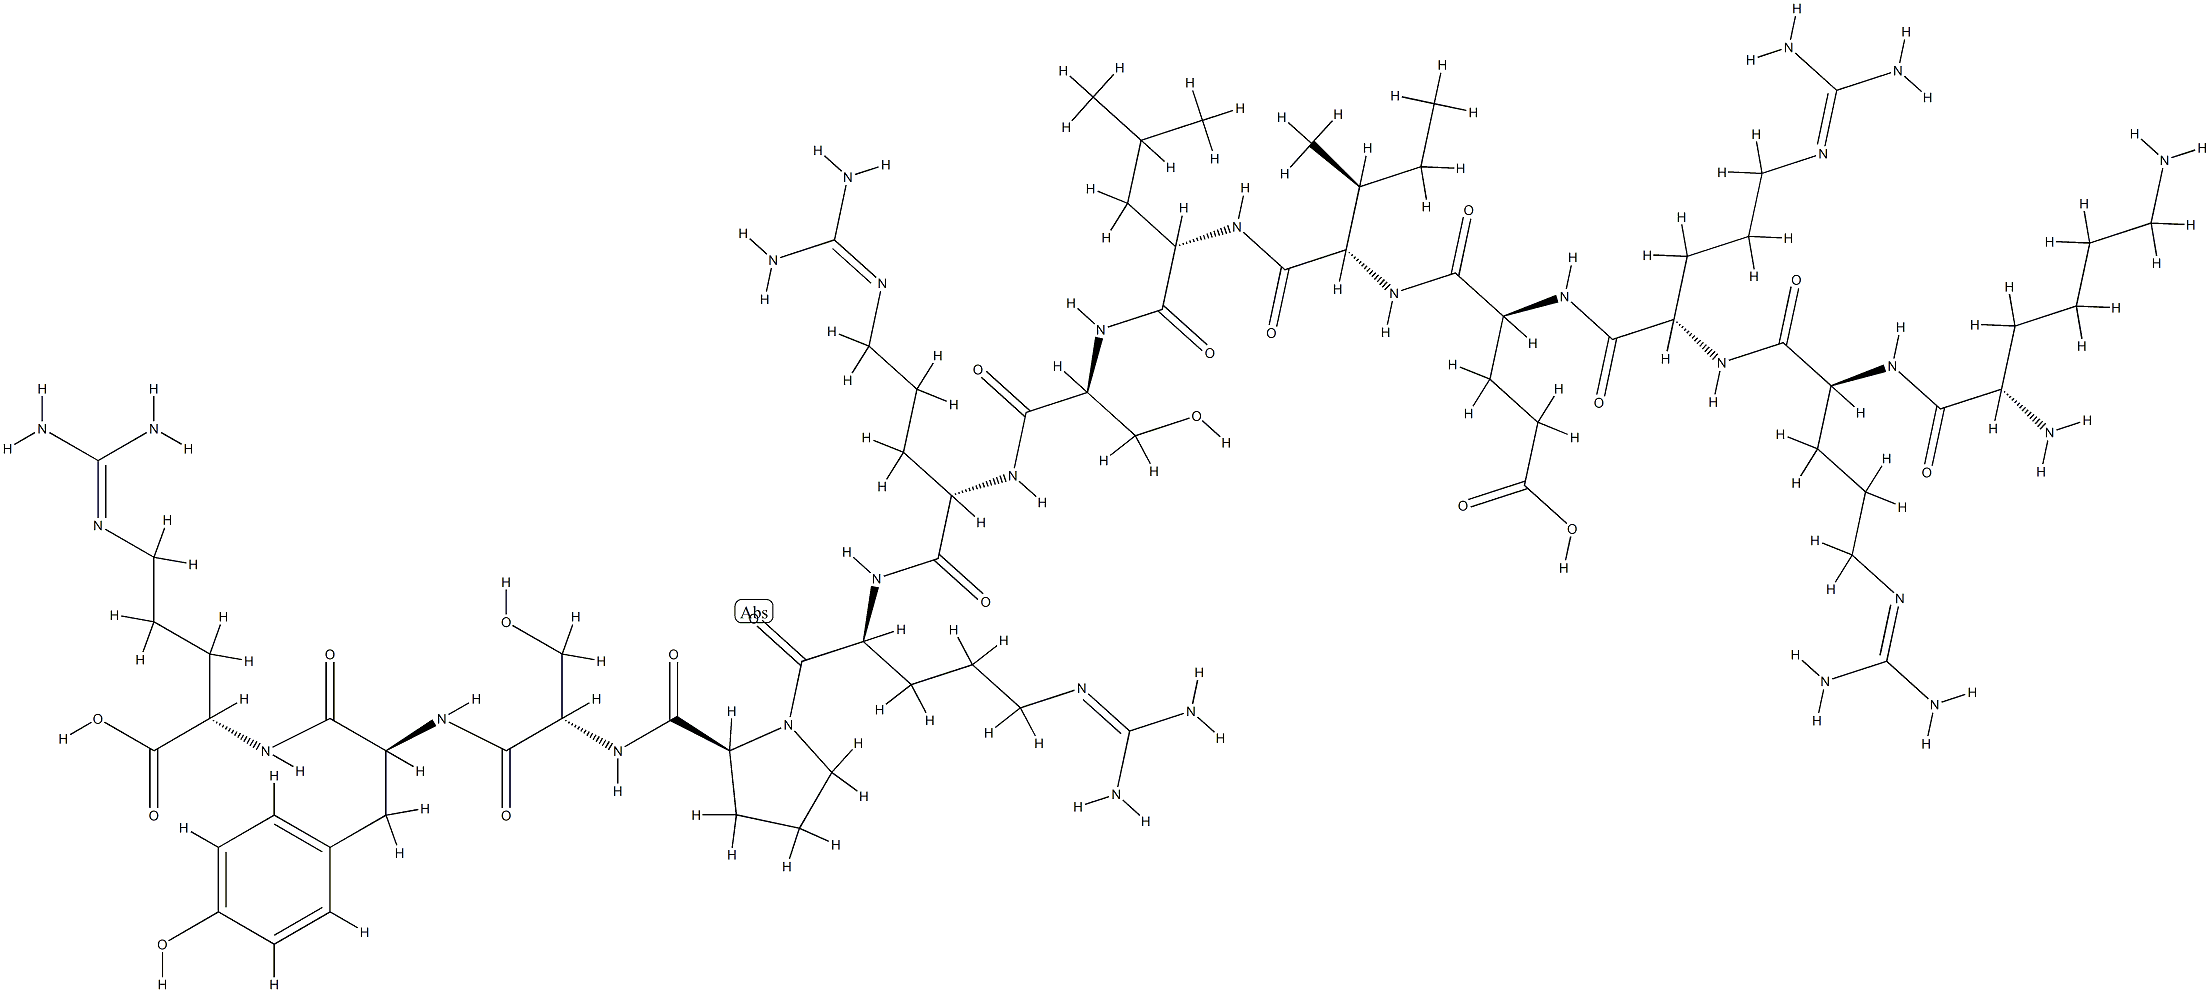 149155-45-3 多肽CREBtide